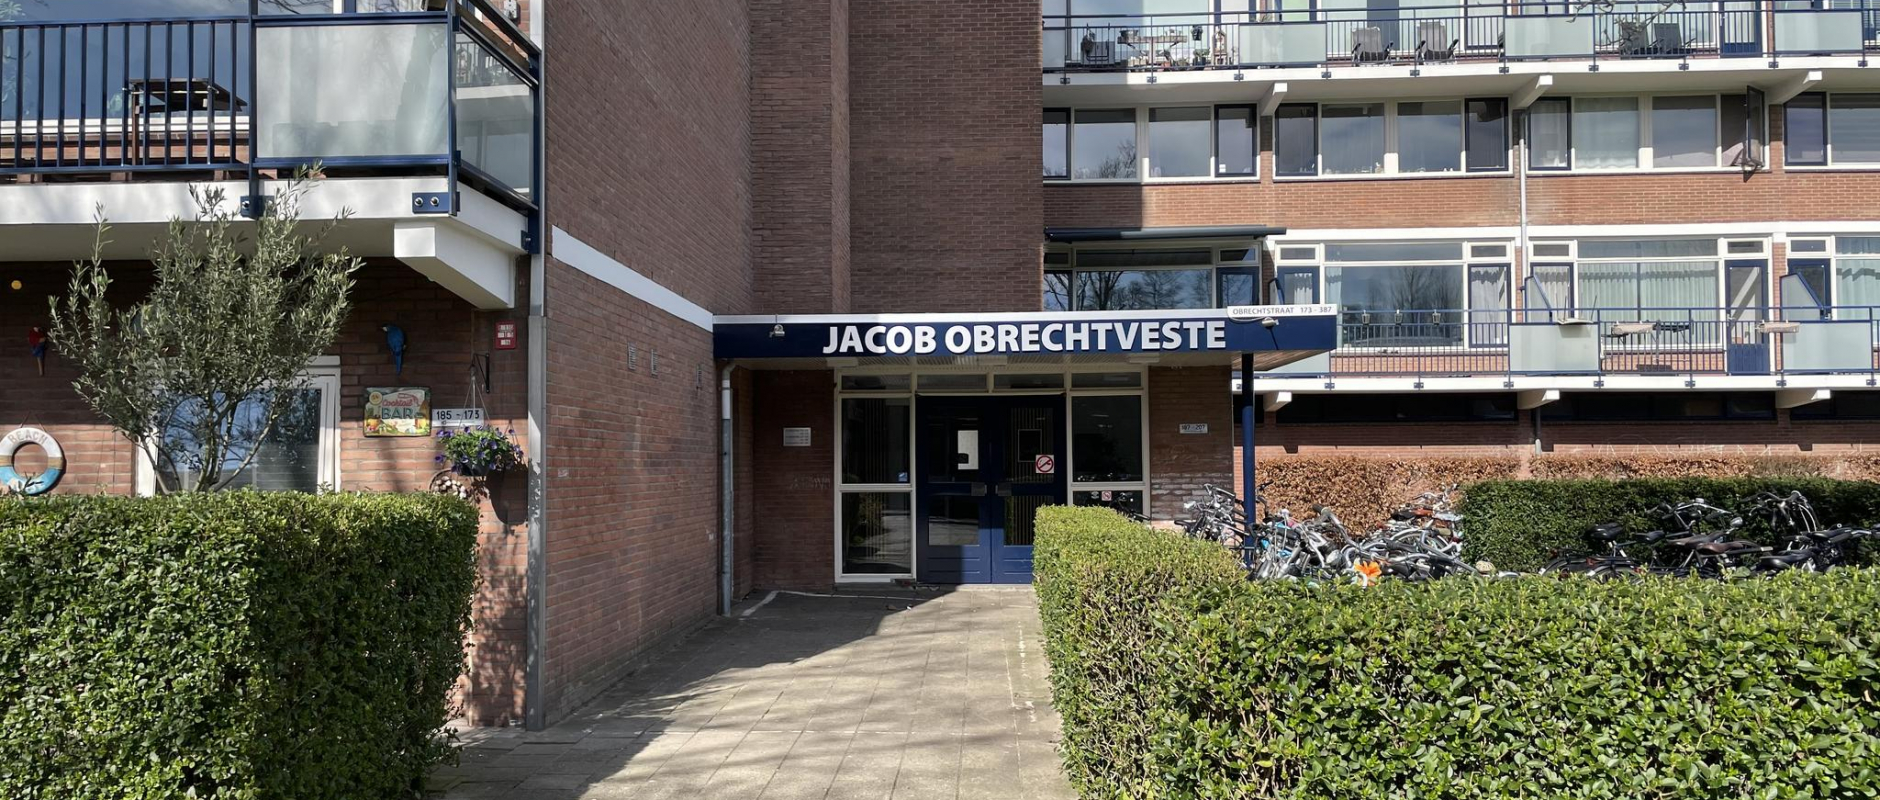 Woning te koop aan de Obrechtstraat 311 te Zwolle